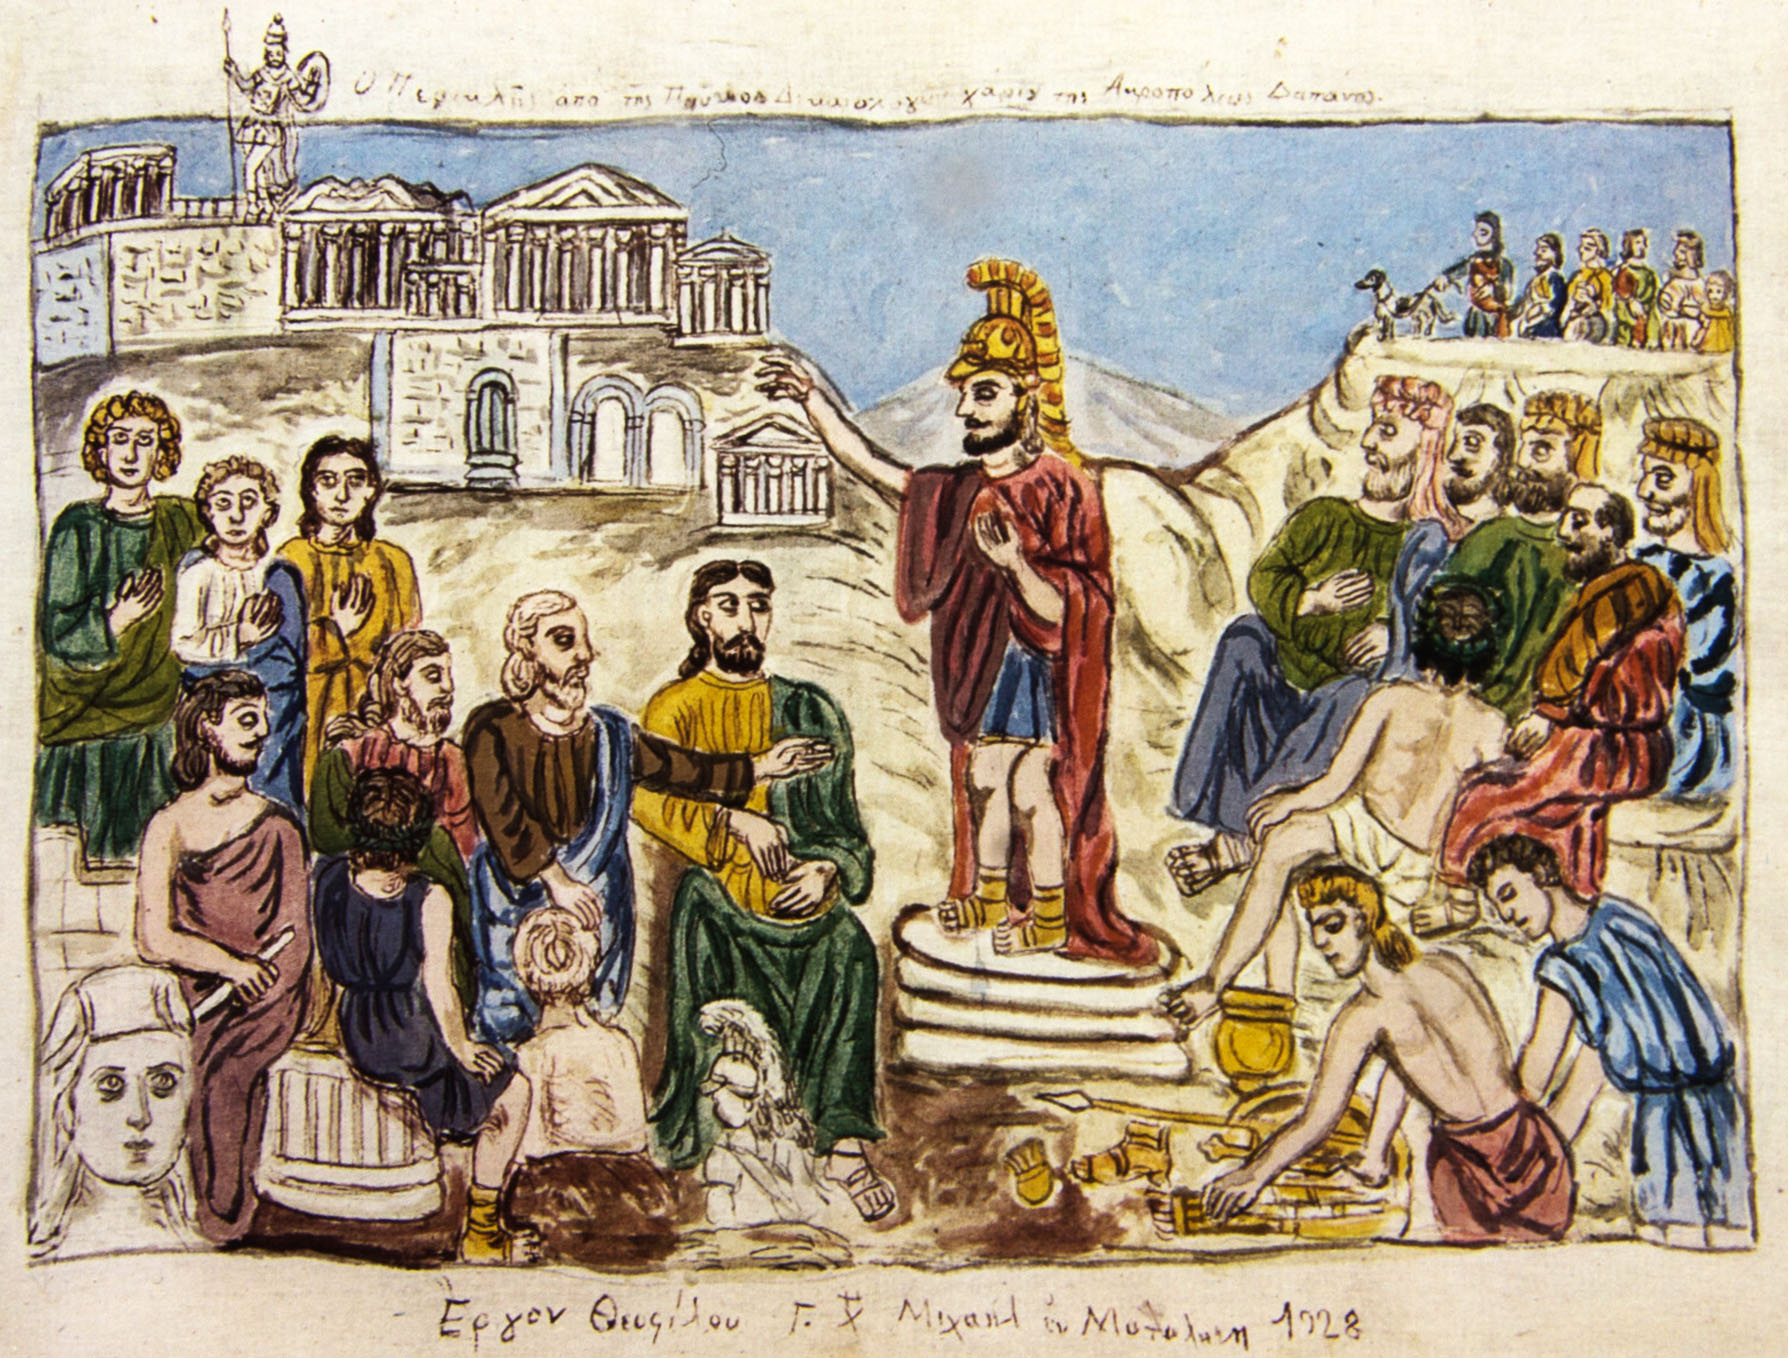 Théophilos, Périclès sur la Pnyx, justifiant les dépenses de l’Acropole. L’oeuvre est conservée au Musée Théophilos, à Mytilène / Θεόφιλος, Ο Περικλής από της Πνυκός Δικαιολογών χάριν της Ακροπόλεως δαπάνας, Το έργο φυλάσσεται στο Μουσείο Θεόφιλου στη Μυτιλήνη 